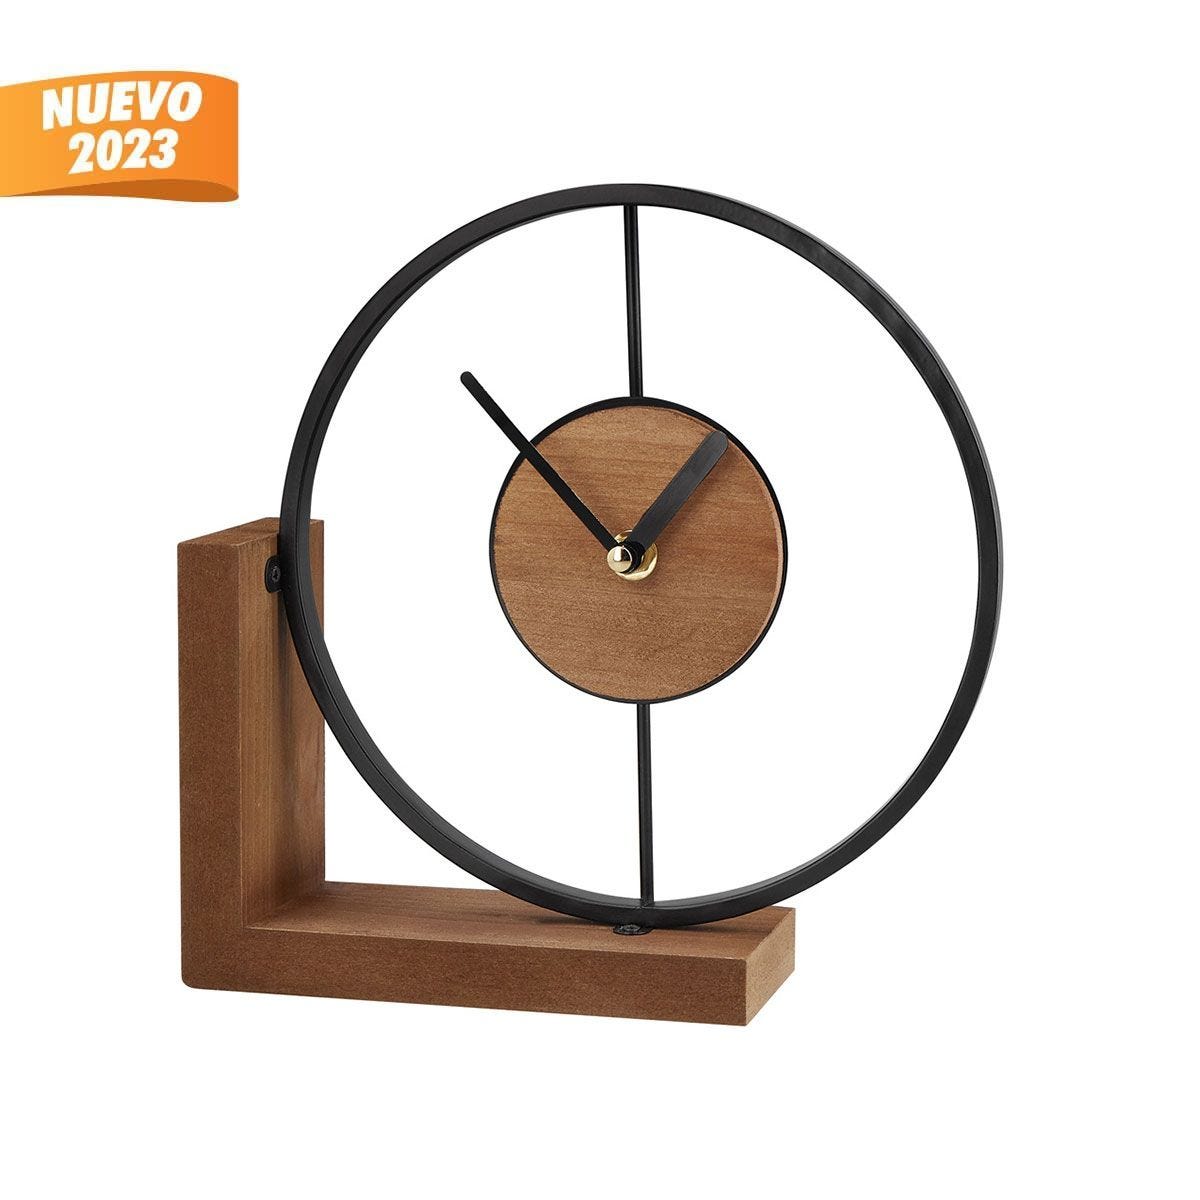 MK 016, RELOJ OCEL. Reloj de mesa con un toque de diseño industrial. Base de madera con estructura metálica que agrega calidez y carácter a cualquier espacio. Requiere 1 pila AA (no incluida).